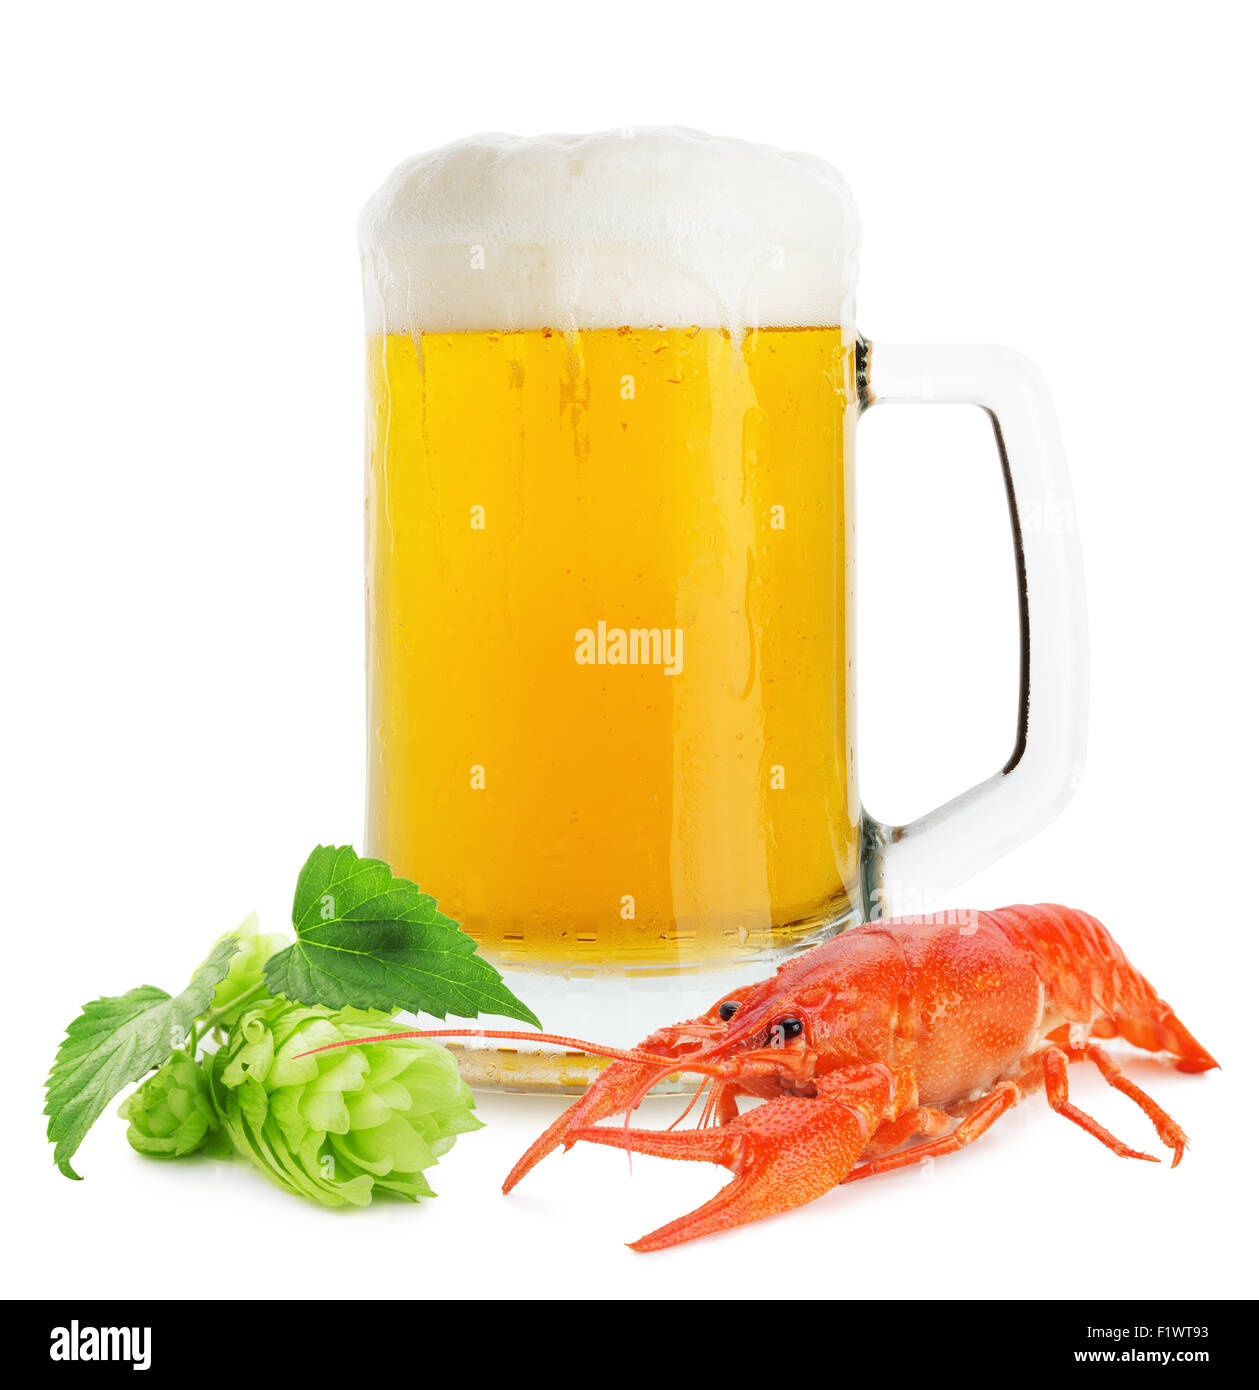 Krug Bier mit Hummer und grünen Hopfen auf dem weißen Hintergrund isoliert. Stockfoto